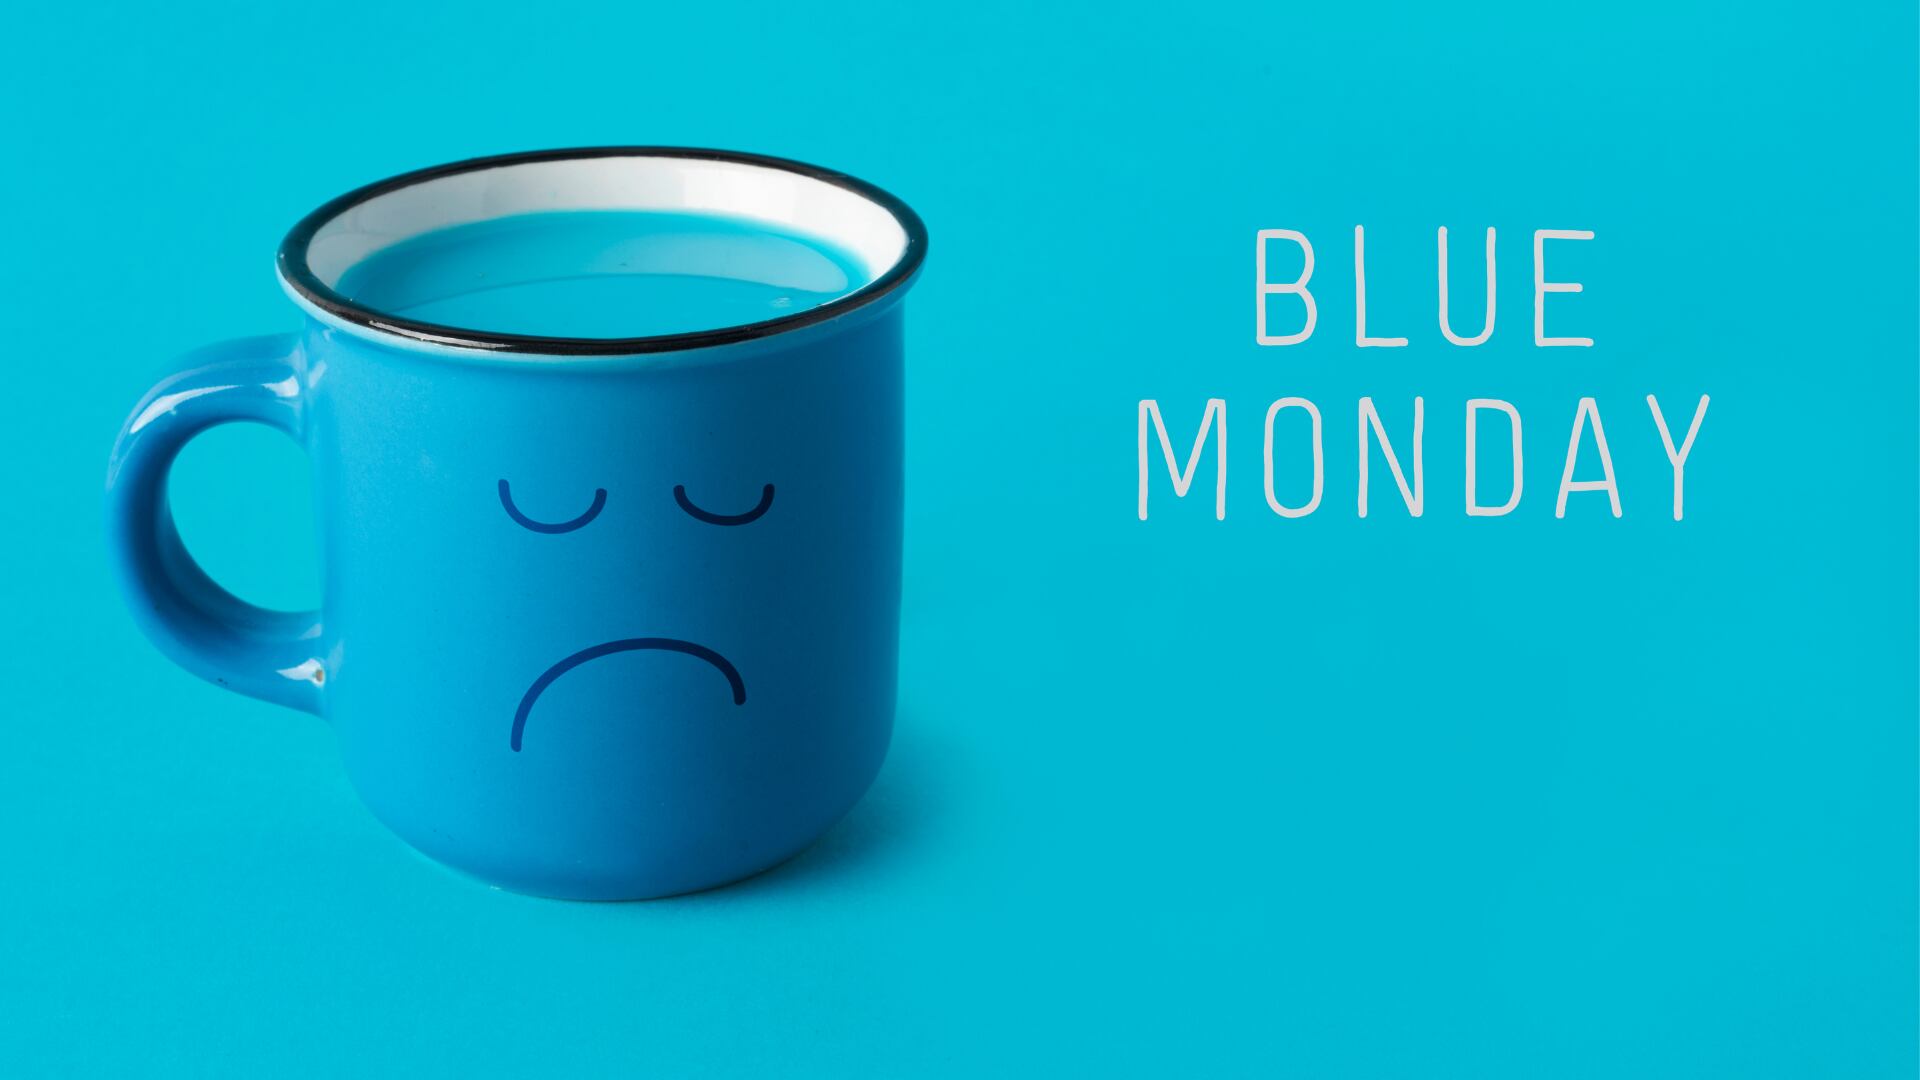 El 'Blue Monday', etiquetado como el día más triste del año, surge de una fórmula ideada por el psicólogo Cliff Arnall en 2005, inicialmente como parte de una estrategia de marketing.